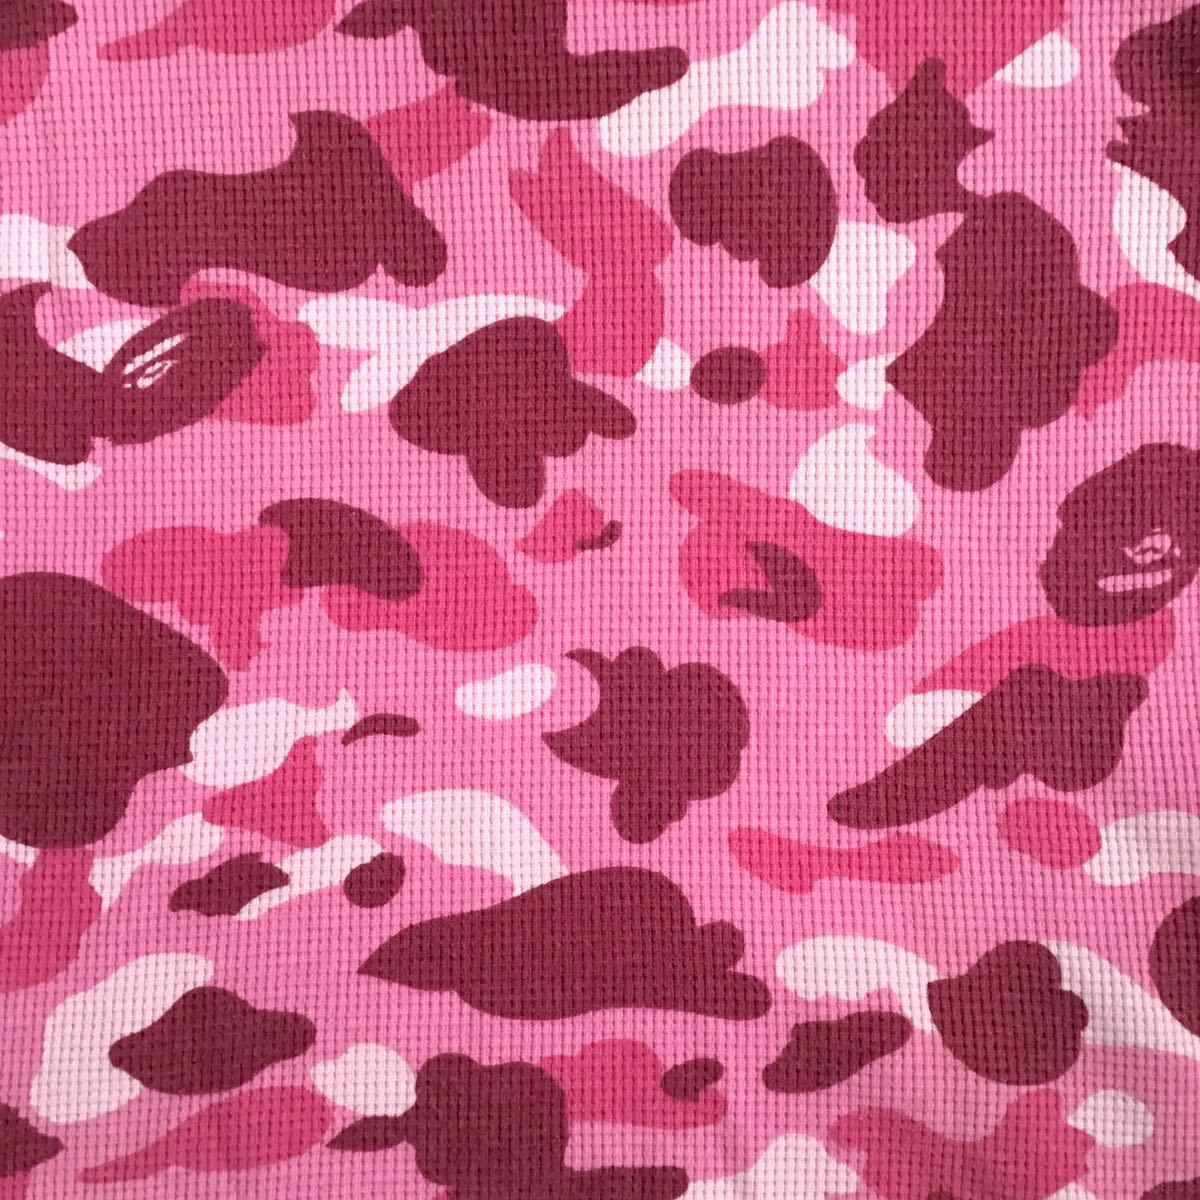 Pink camo サーマル Tシャツ Mサイズ a bathing ape BAPE camo エイプ ベイプ アベイシングエイプ NIGO ピンク 迷彩 ピンクカモ w1_画像4